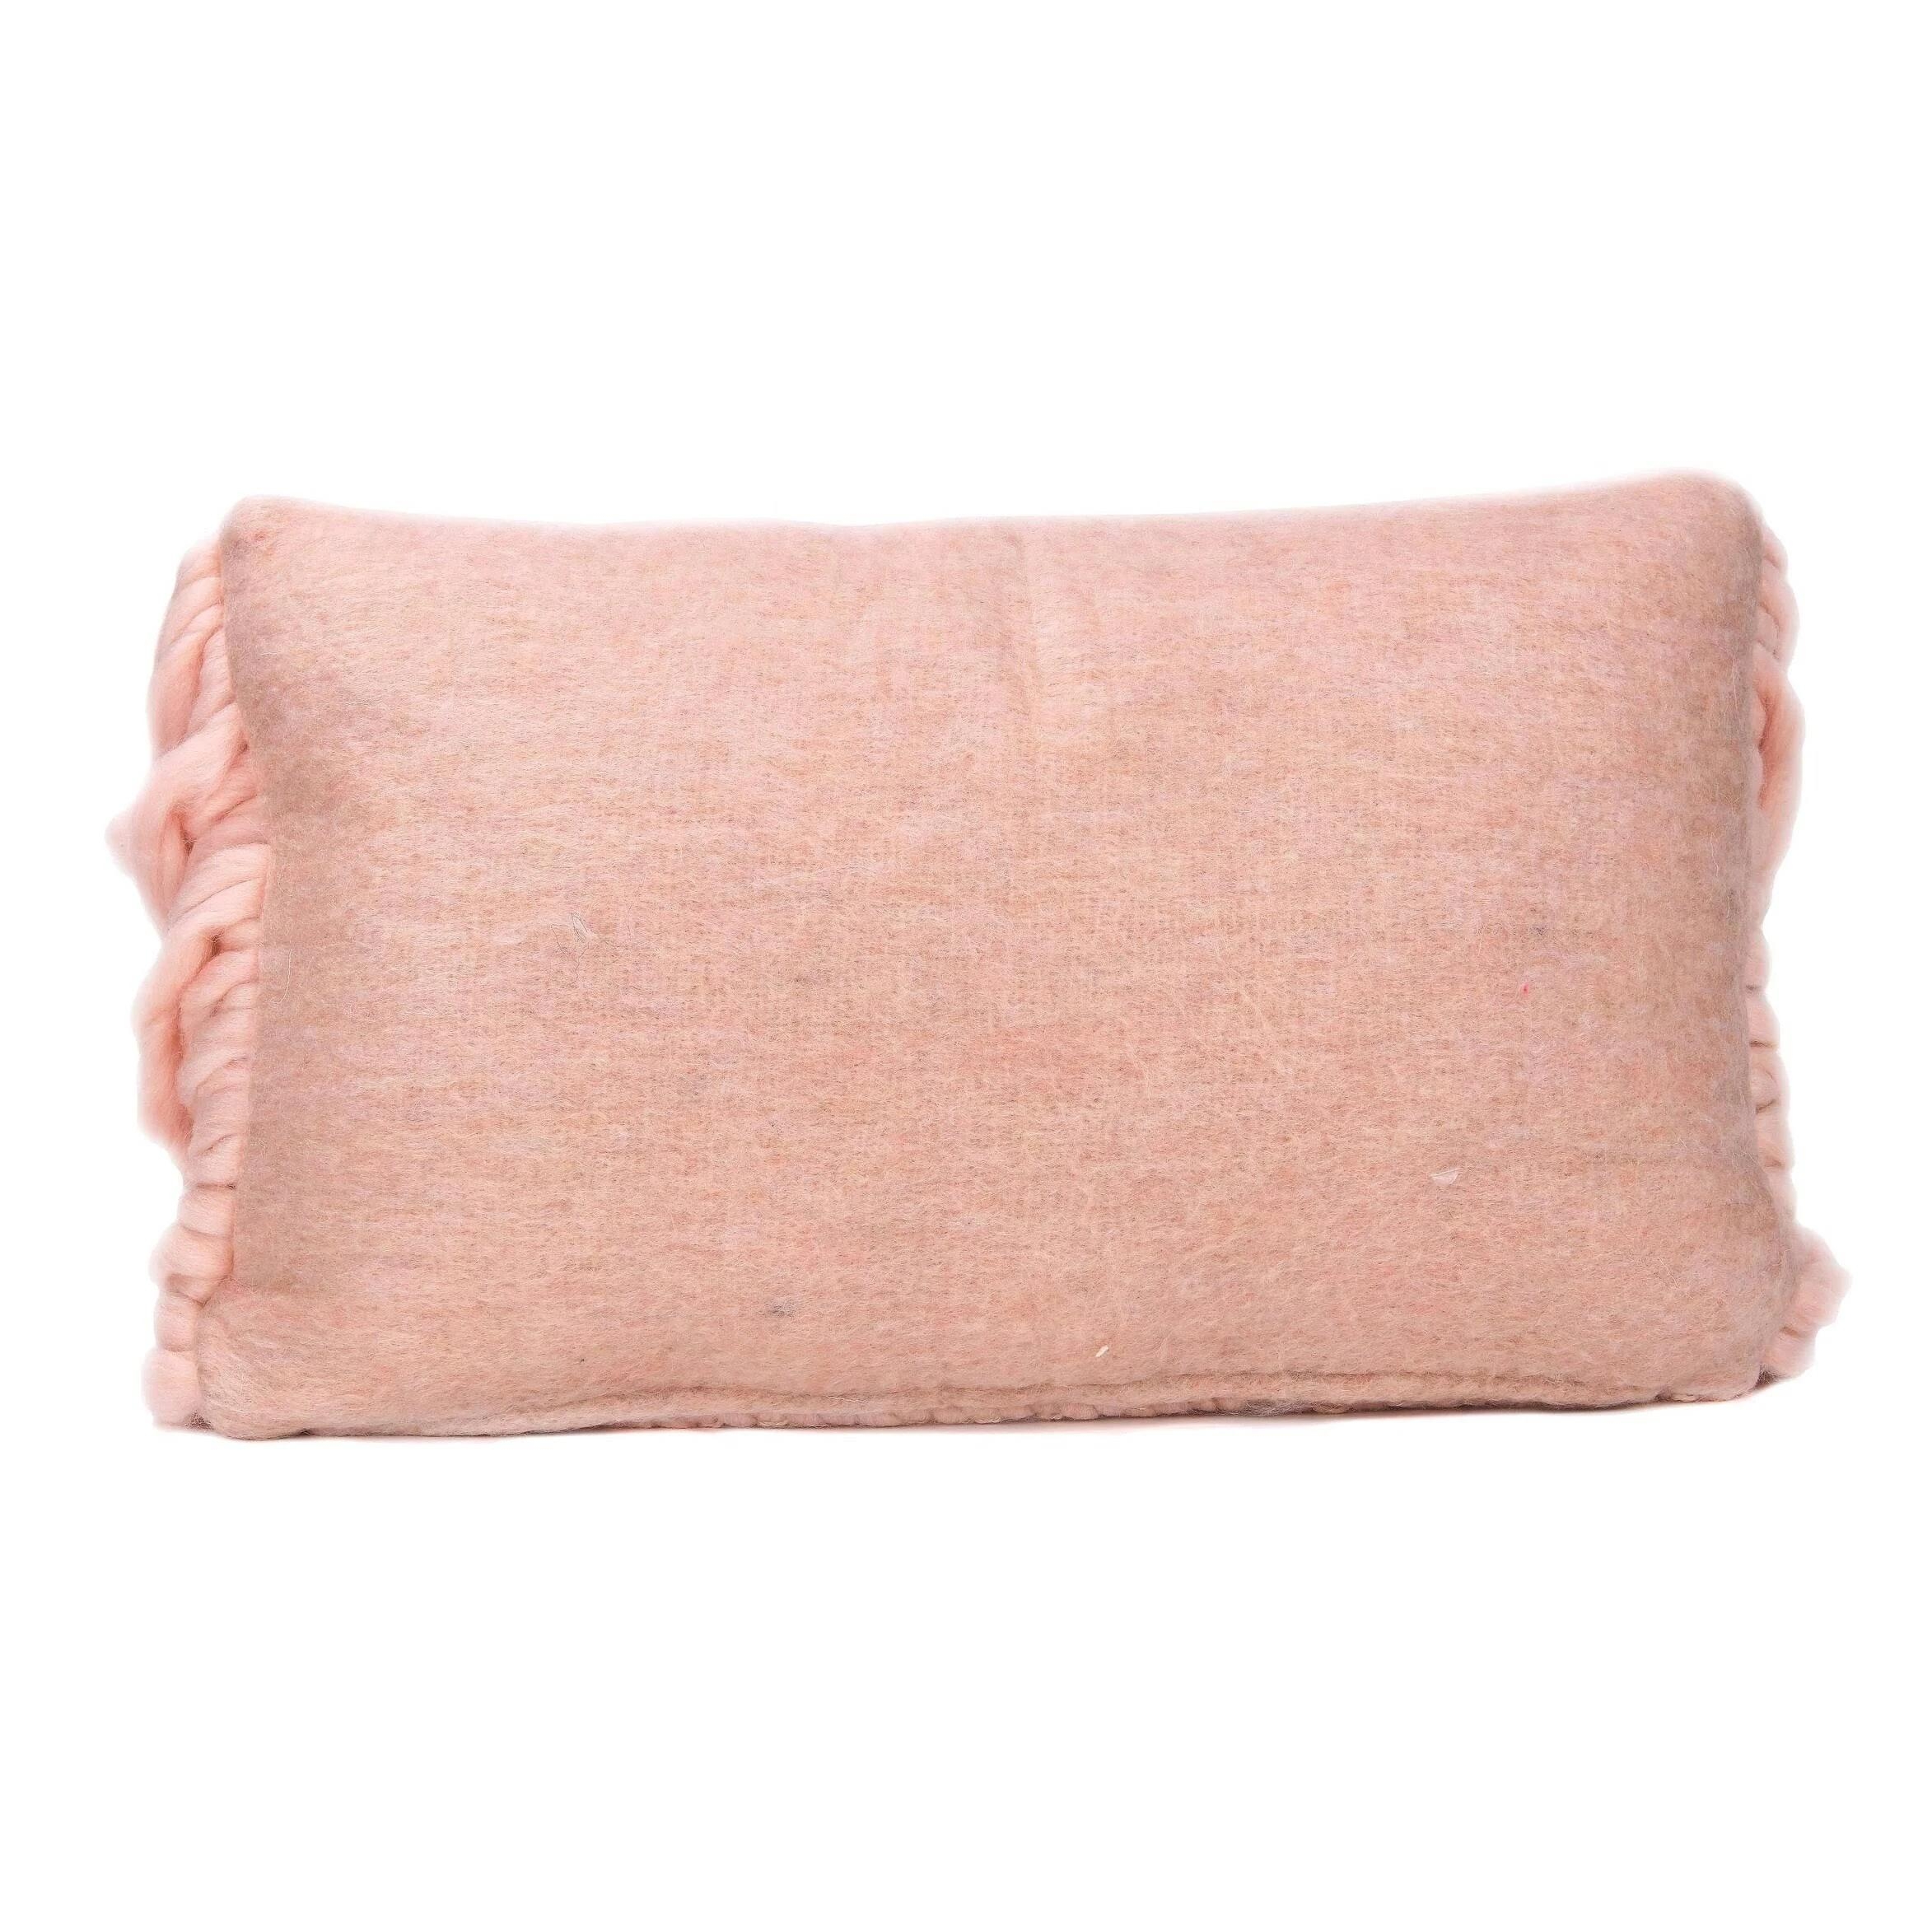 Harper Wool Blush Pillow - Image 1